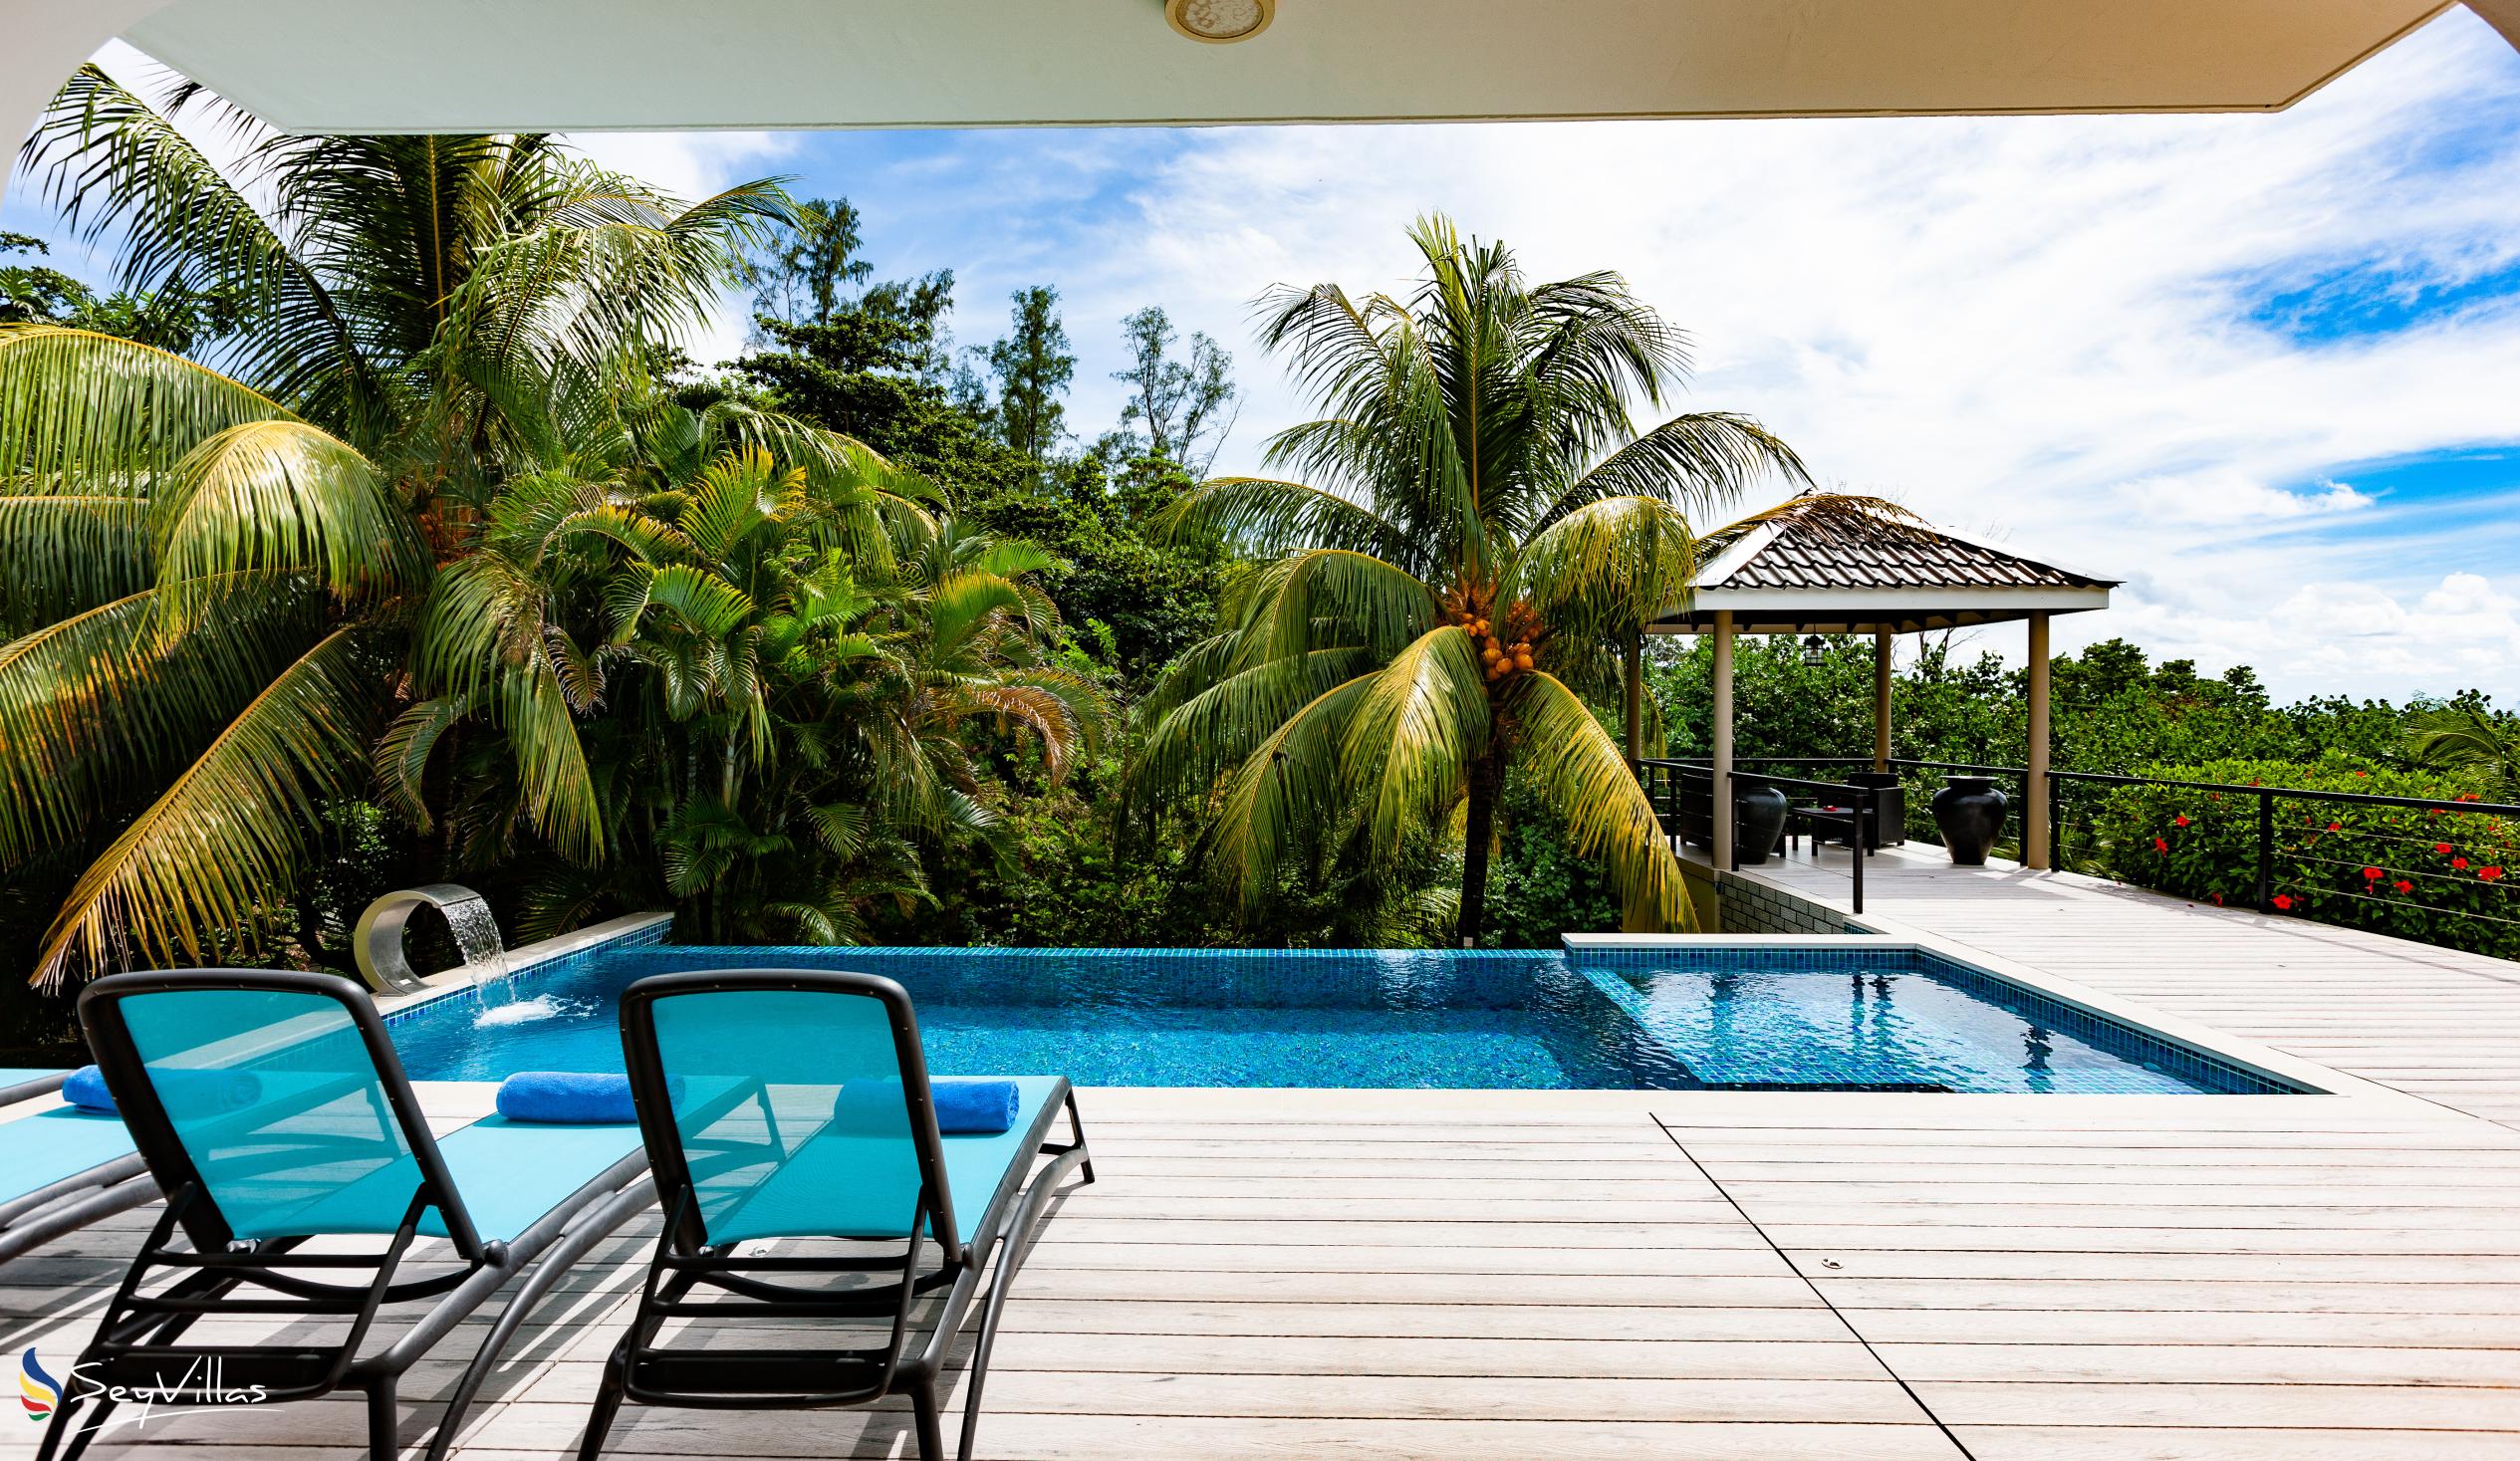 Foto 34: Tranquility Villa - Aussenbereich - Praslin (Seychellen)